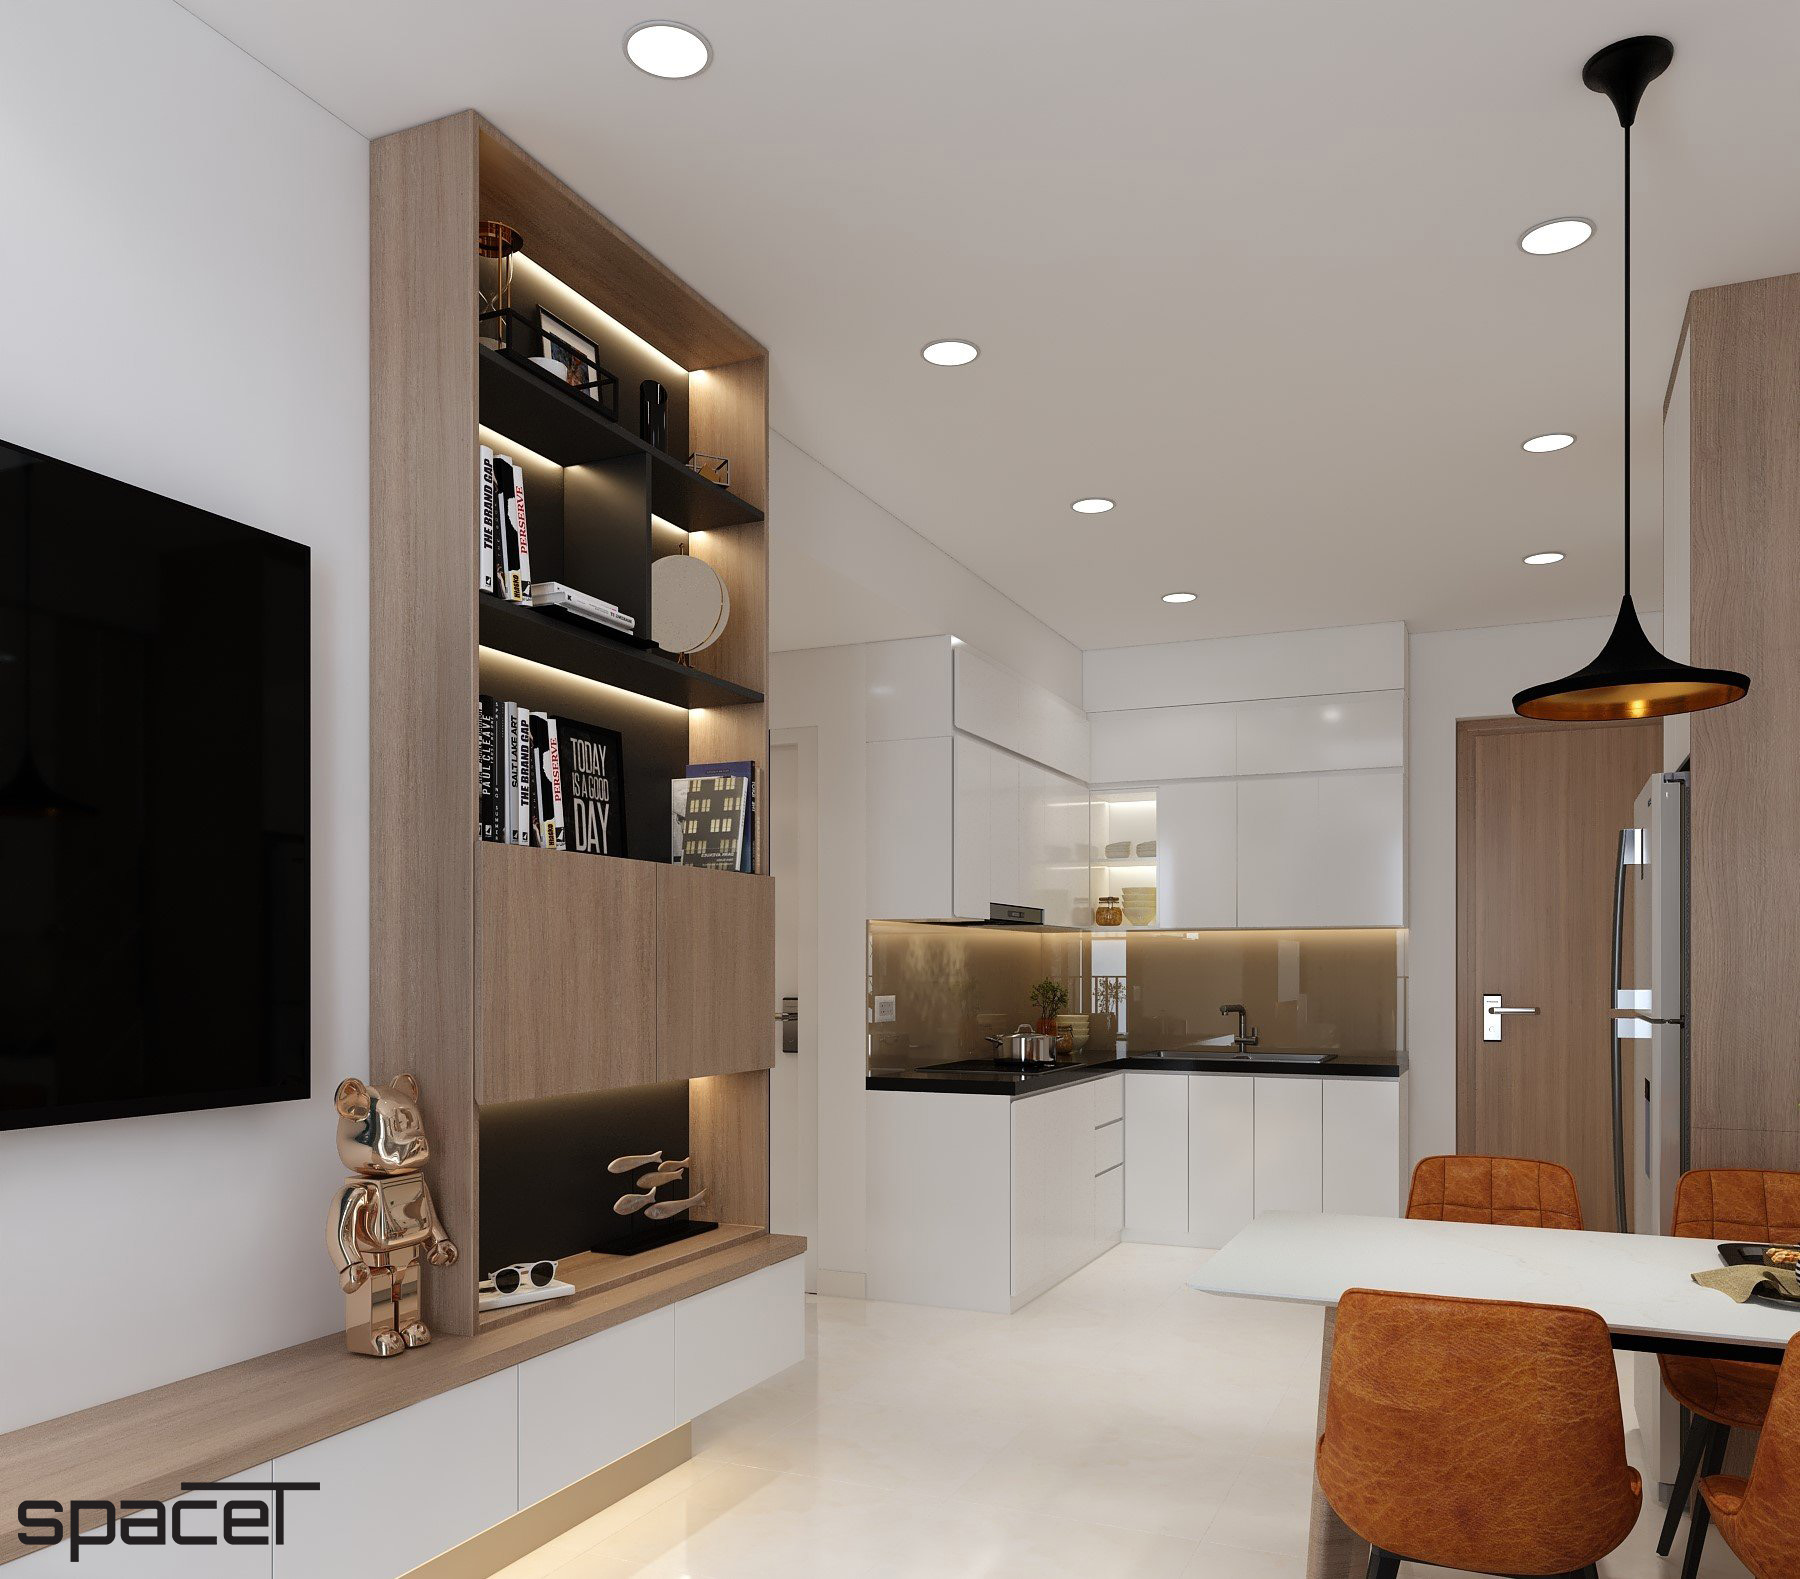 Phòng bếp, phòng ăn, phong cách Hiện đại Modern, thiết kế concept nội thất, căn hộ chung cư Ricca